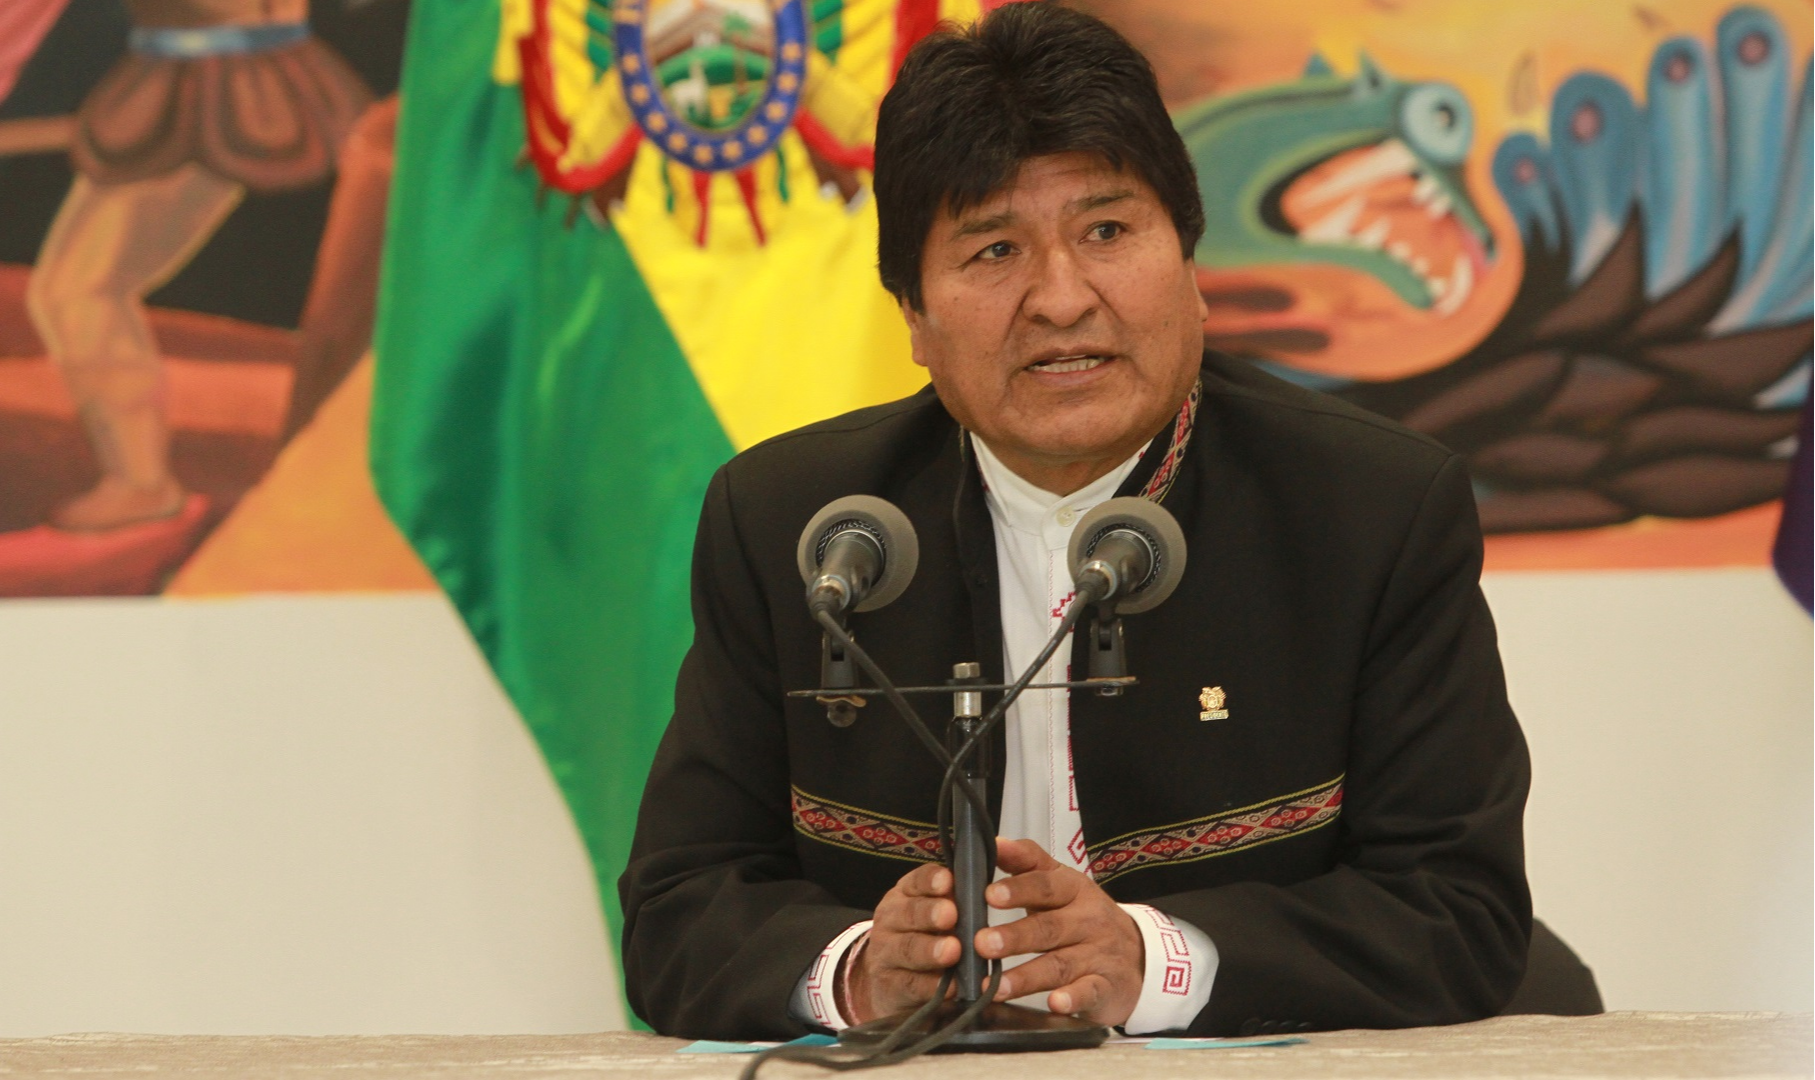 'Faço um apelo aos organismos internacionais para defender a democracia. Não vamos buscar o confronto, porém vamos defender a democracia', afirmou presidente boliviano